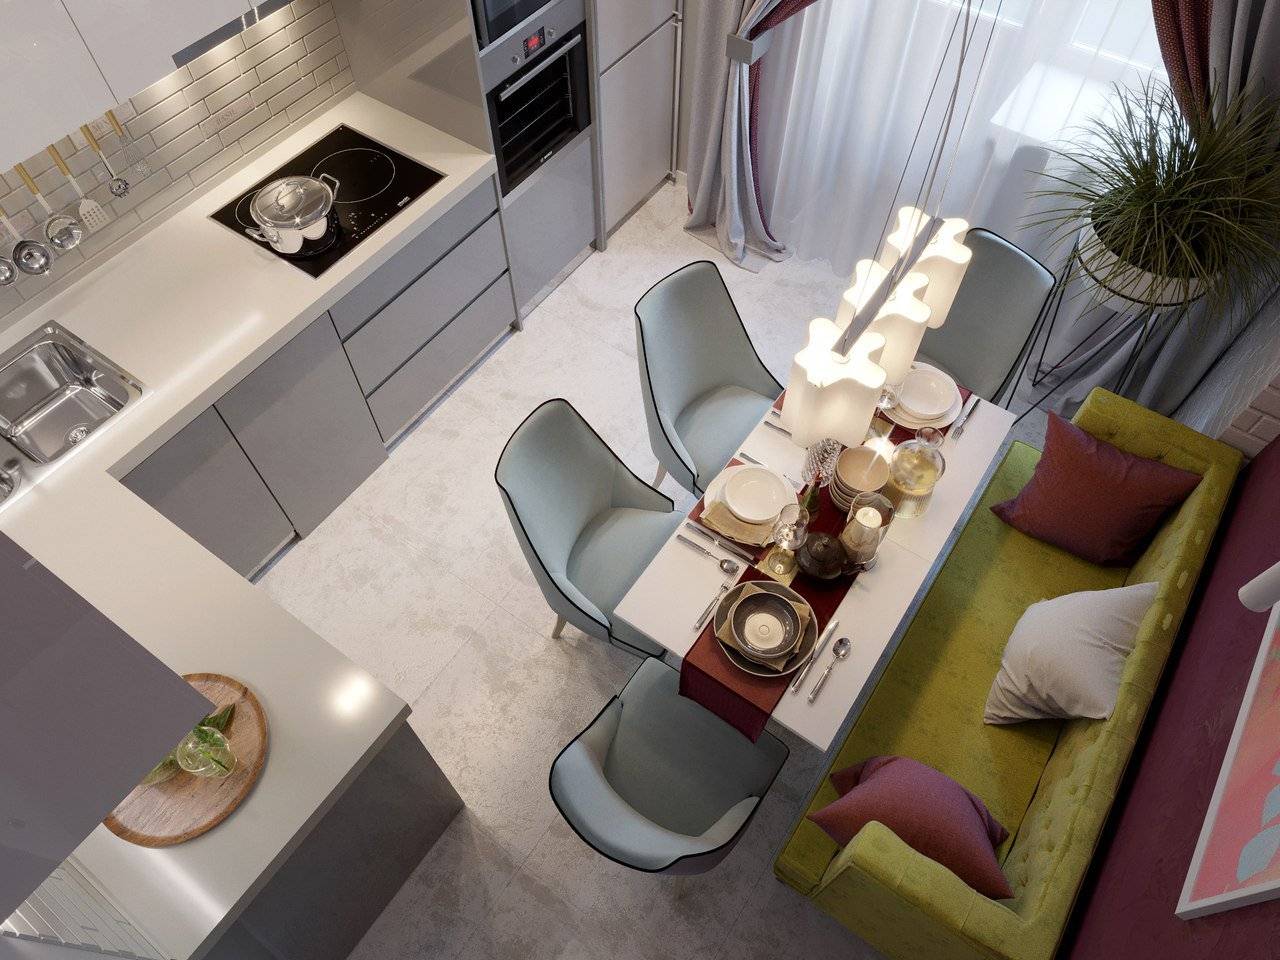 Дизайн маленькой кухни 4 кв метра : выбор стиля, планировки, цветовой палитры, освещения, 95+ лучших фото